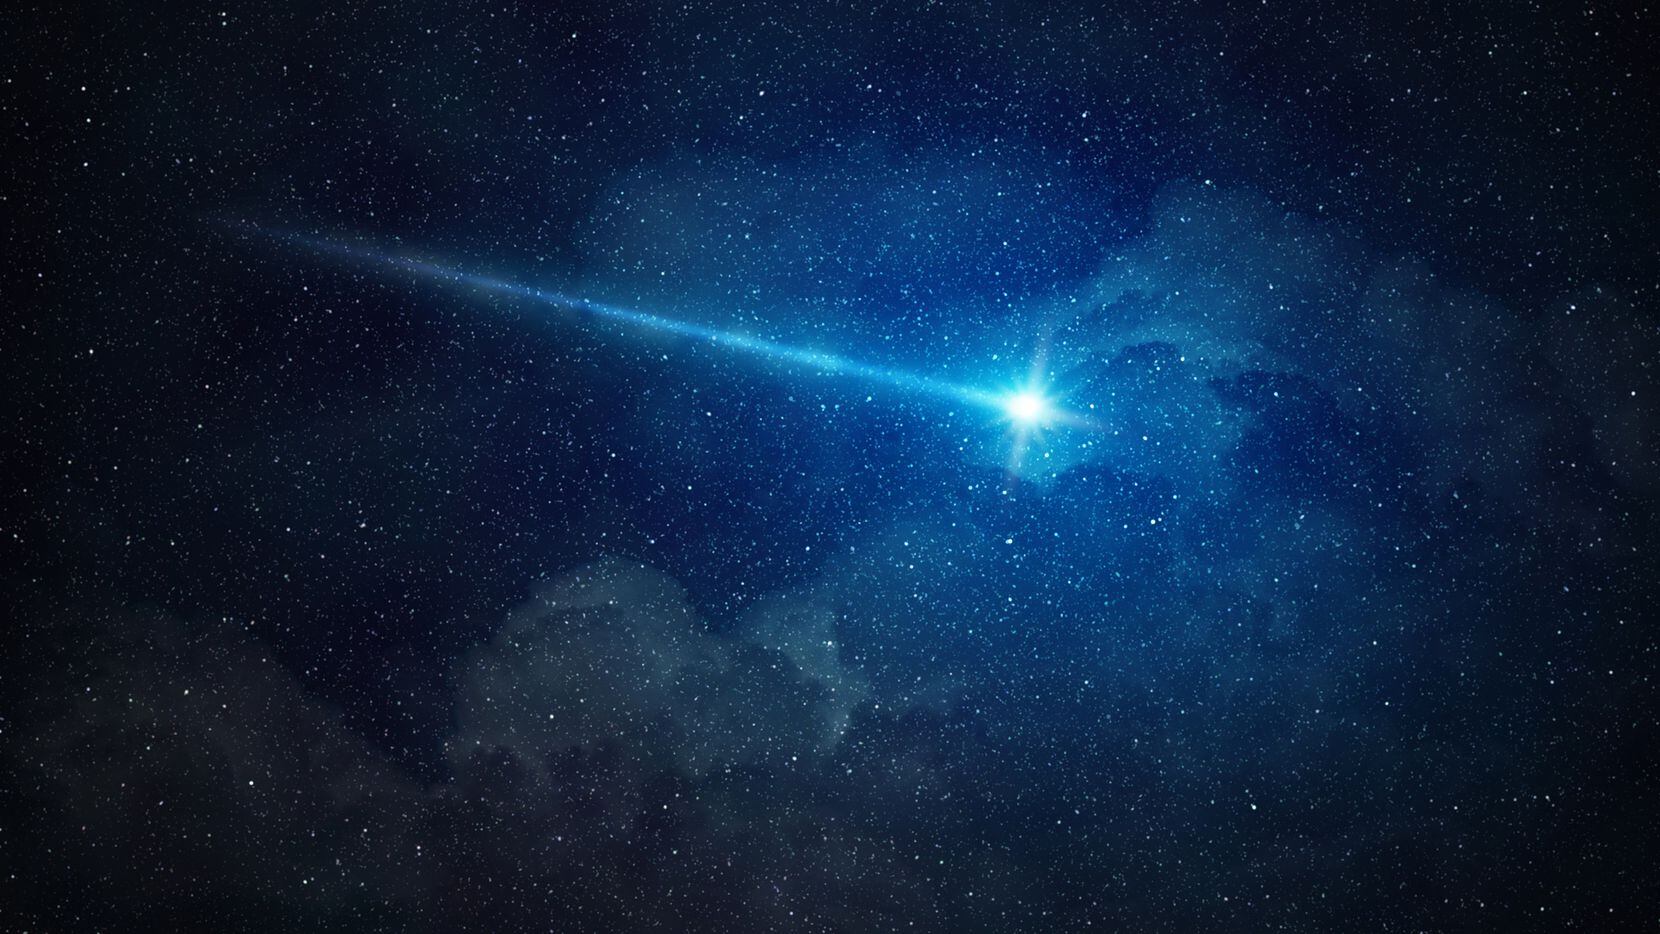 Texas Storm Chasers reportó un meteorito o estrella fugaz en los cielos del Norte de Texas...